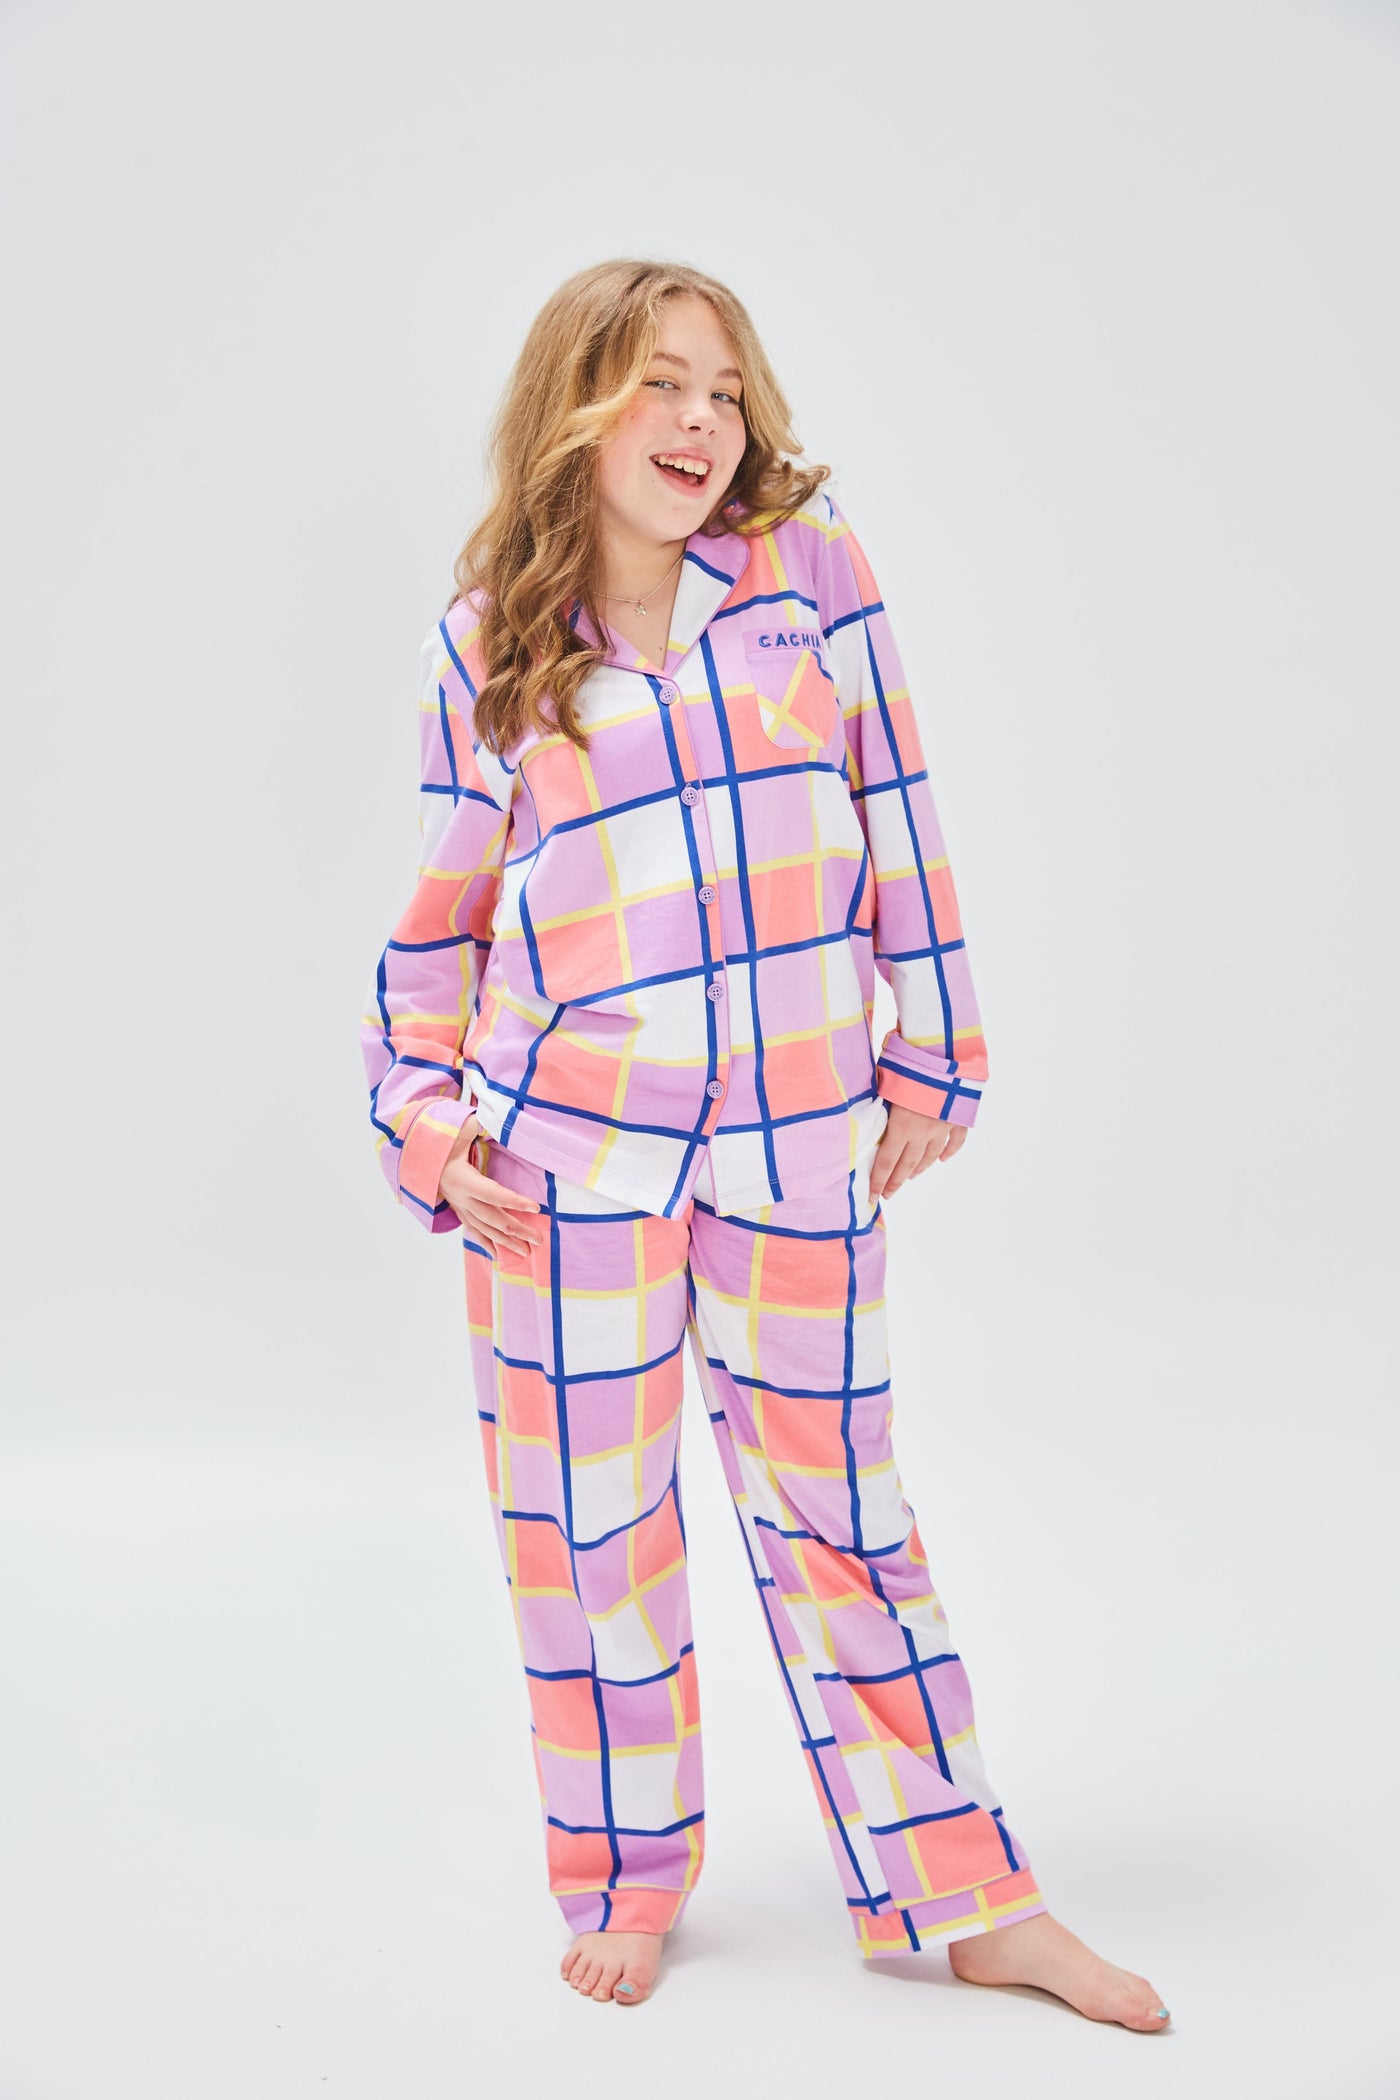 Cachia Heidi Pajamas